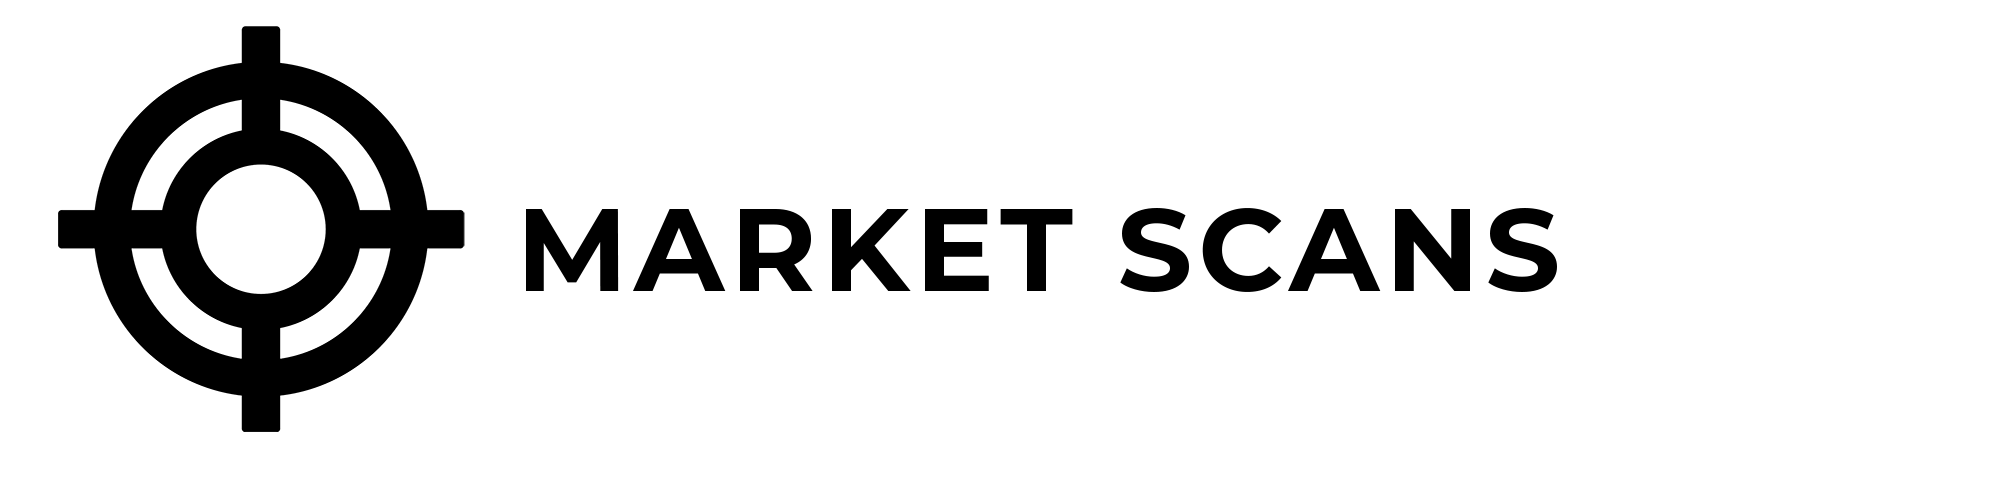 Market Scans Menu Nav Image